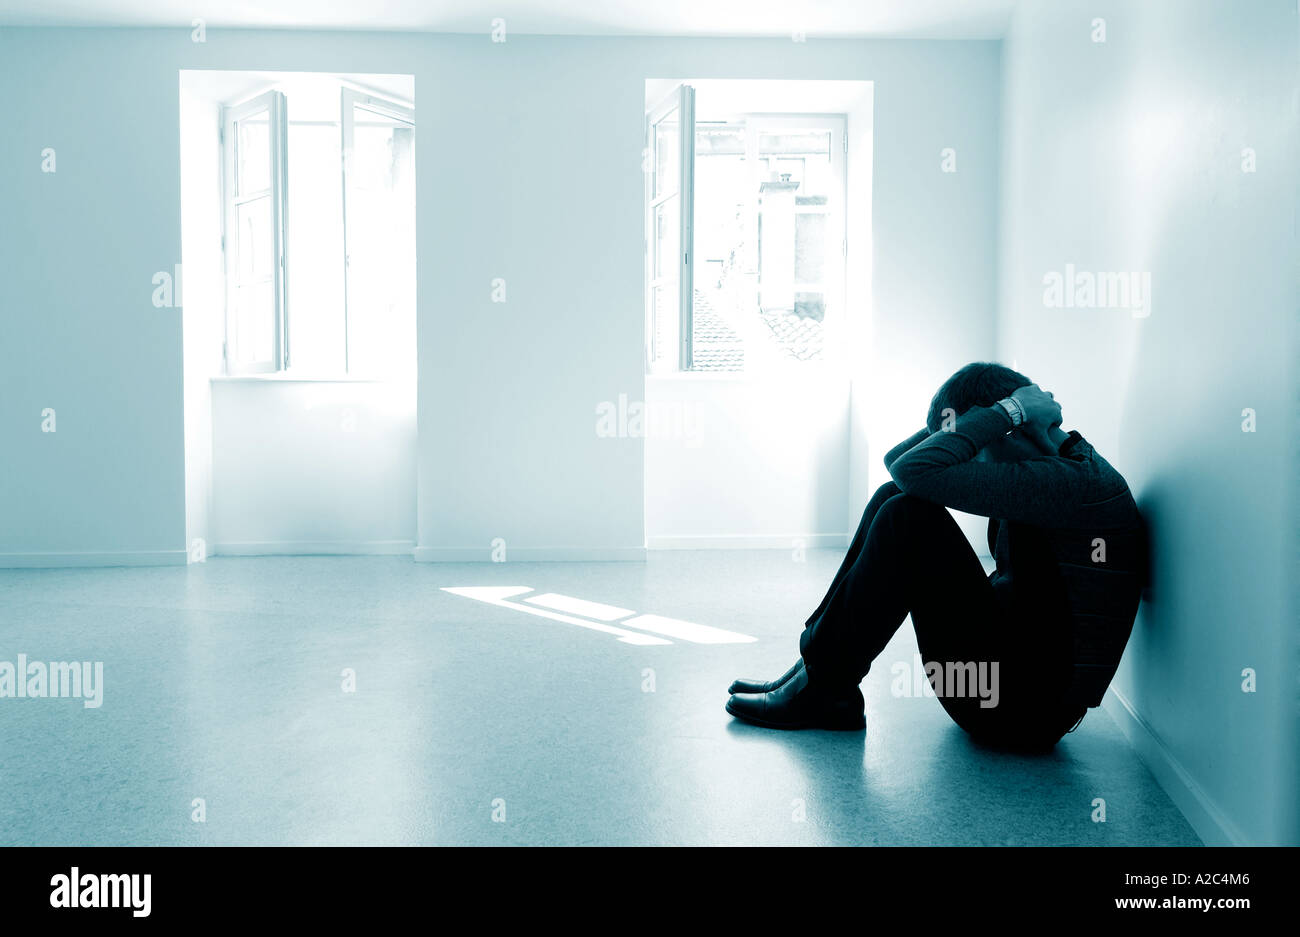 Allein der Mensch in einem leeren Raum - Männliche mit Depressionen/psychische Erkrankungen/Missbrauch/Trauer/mental health Concept Stockfoto